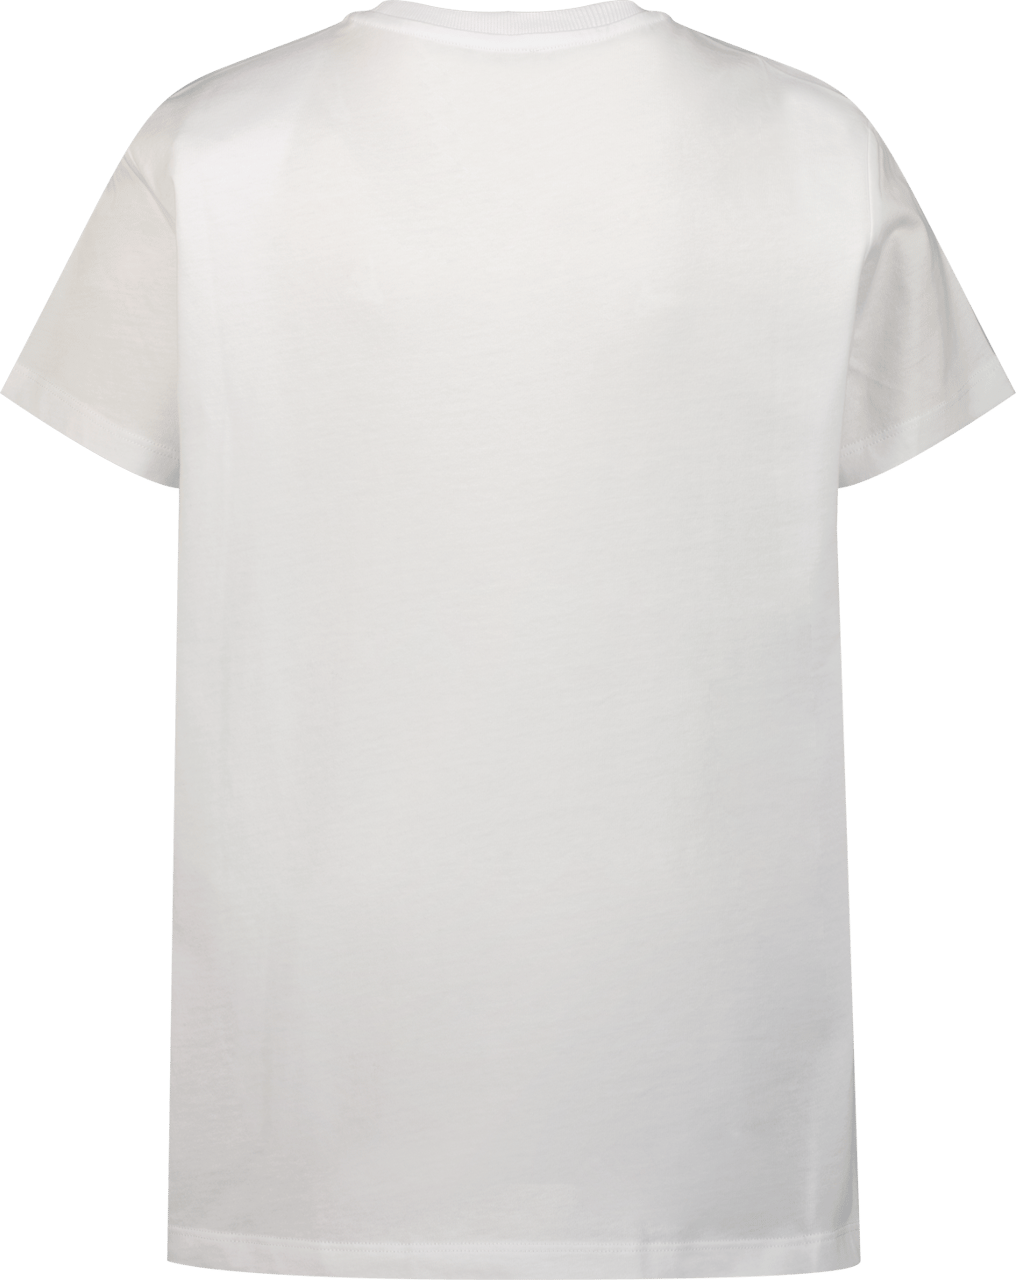 Moschino t-shirt white Wit